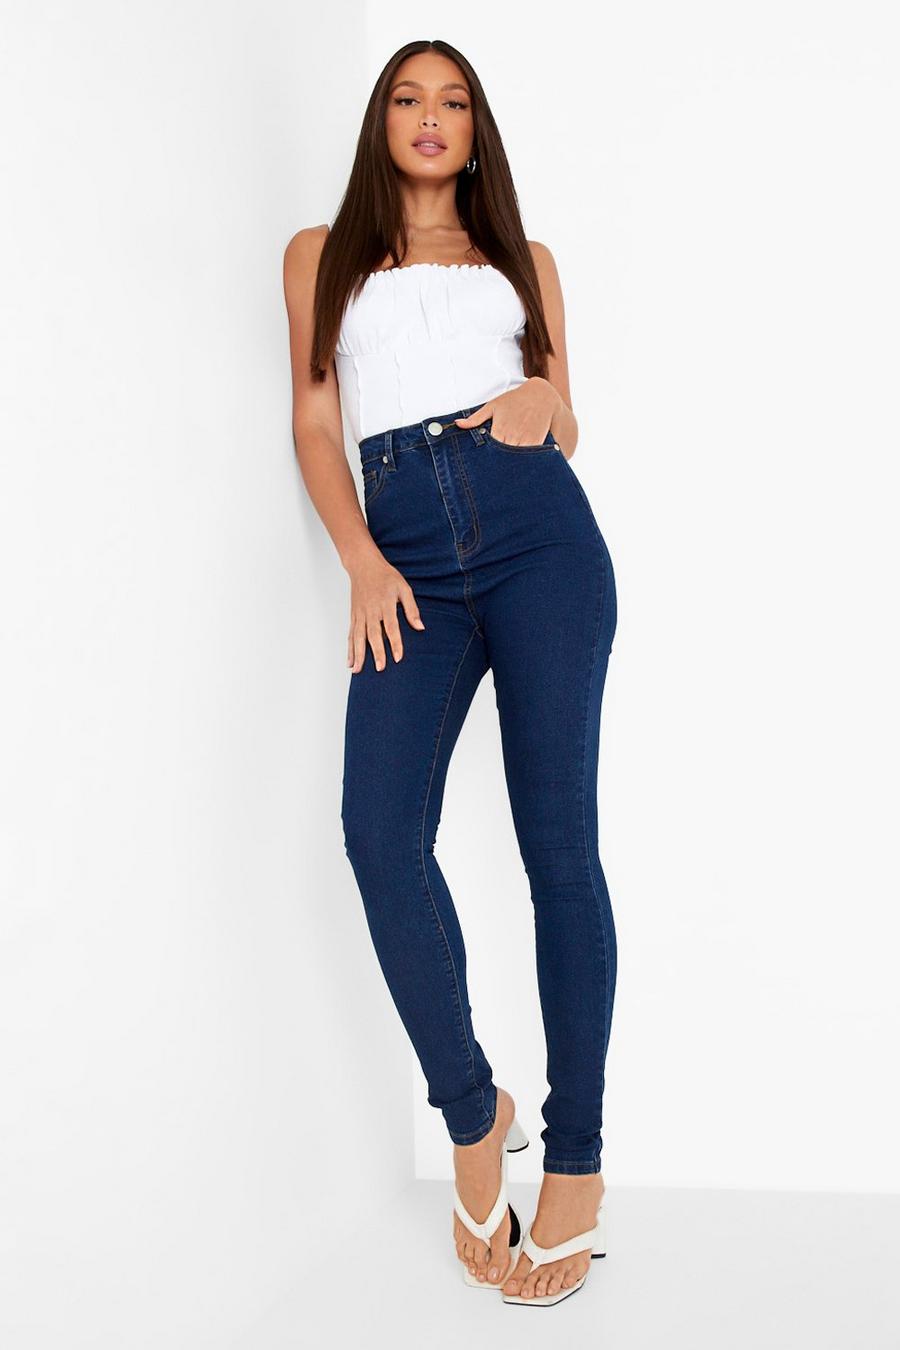 כחול ביניים סקיני ג'ינס High Waist באורך 89 ס"מ לנשים גבוהות image number 1